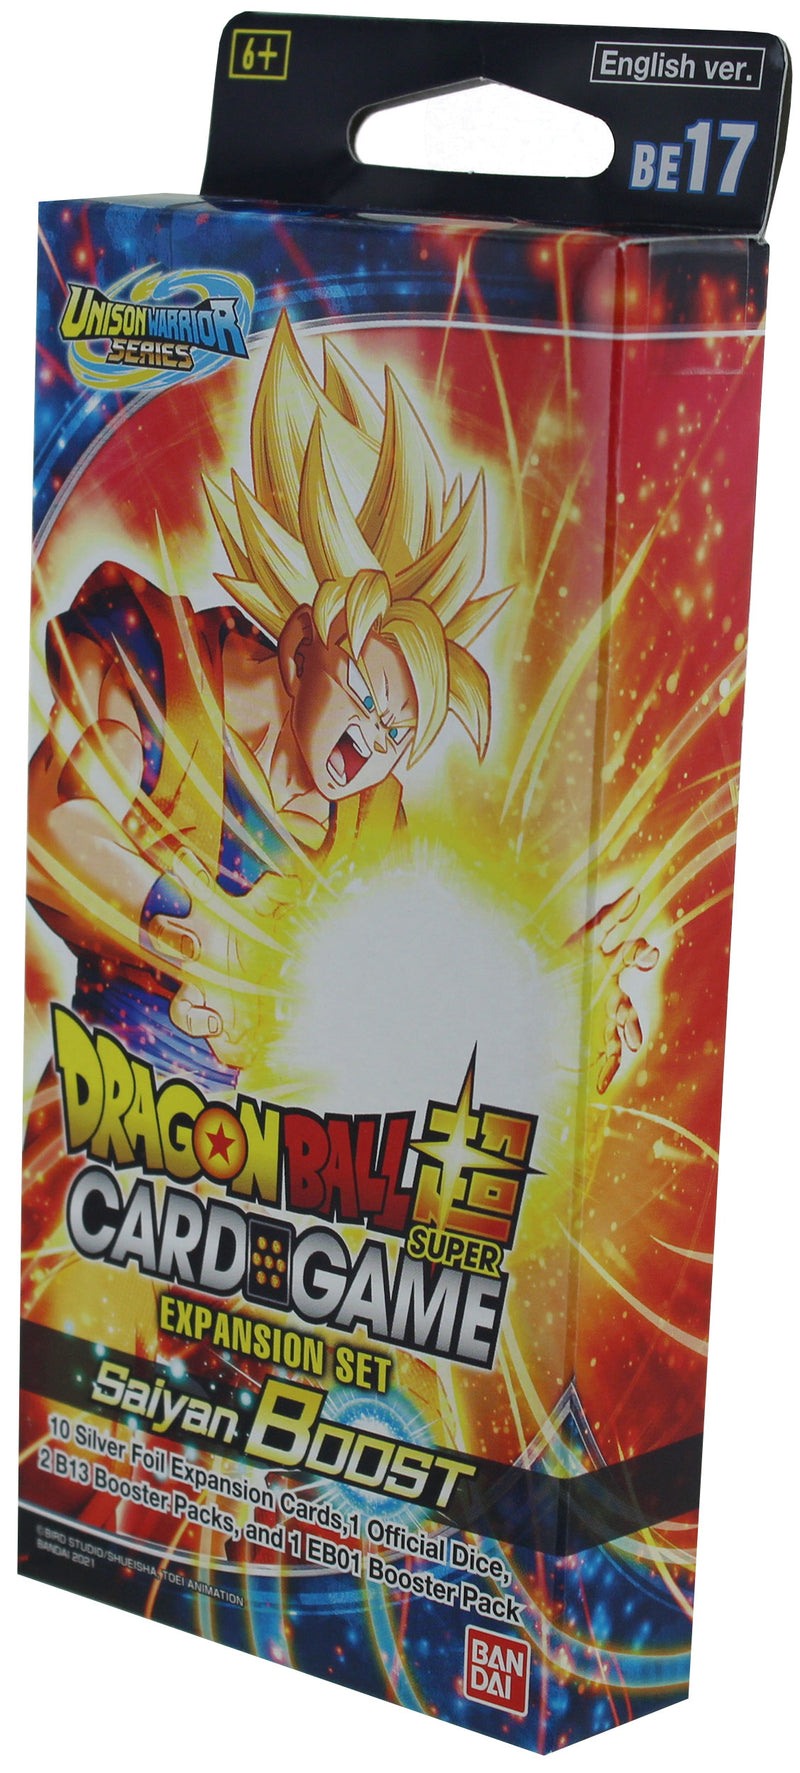 Dragon Ball Super Card Game: Saiyan Boost Expansion Set